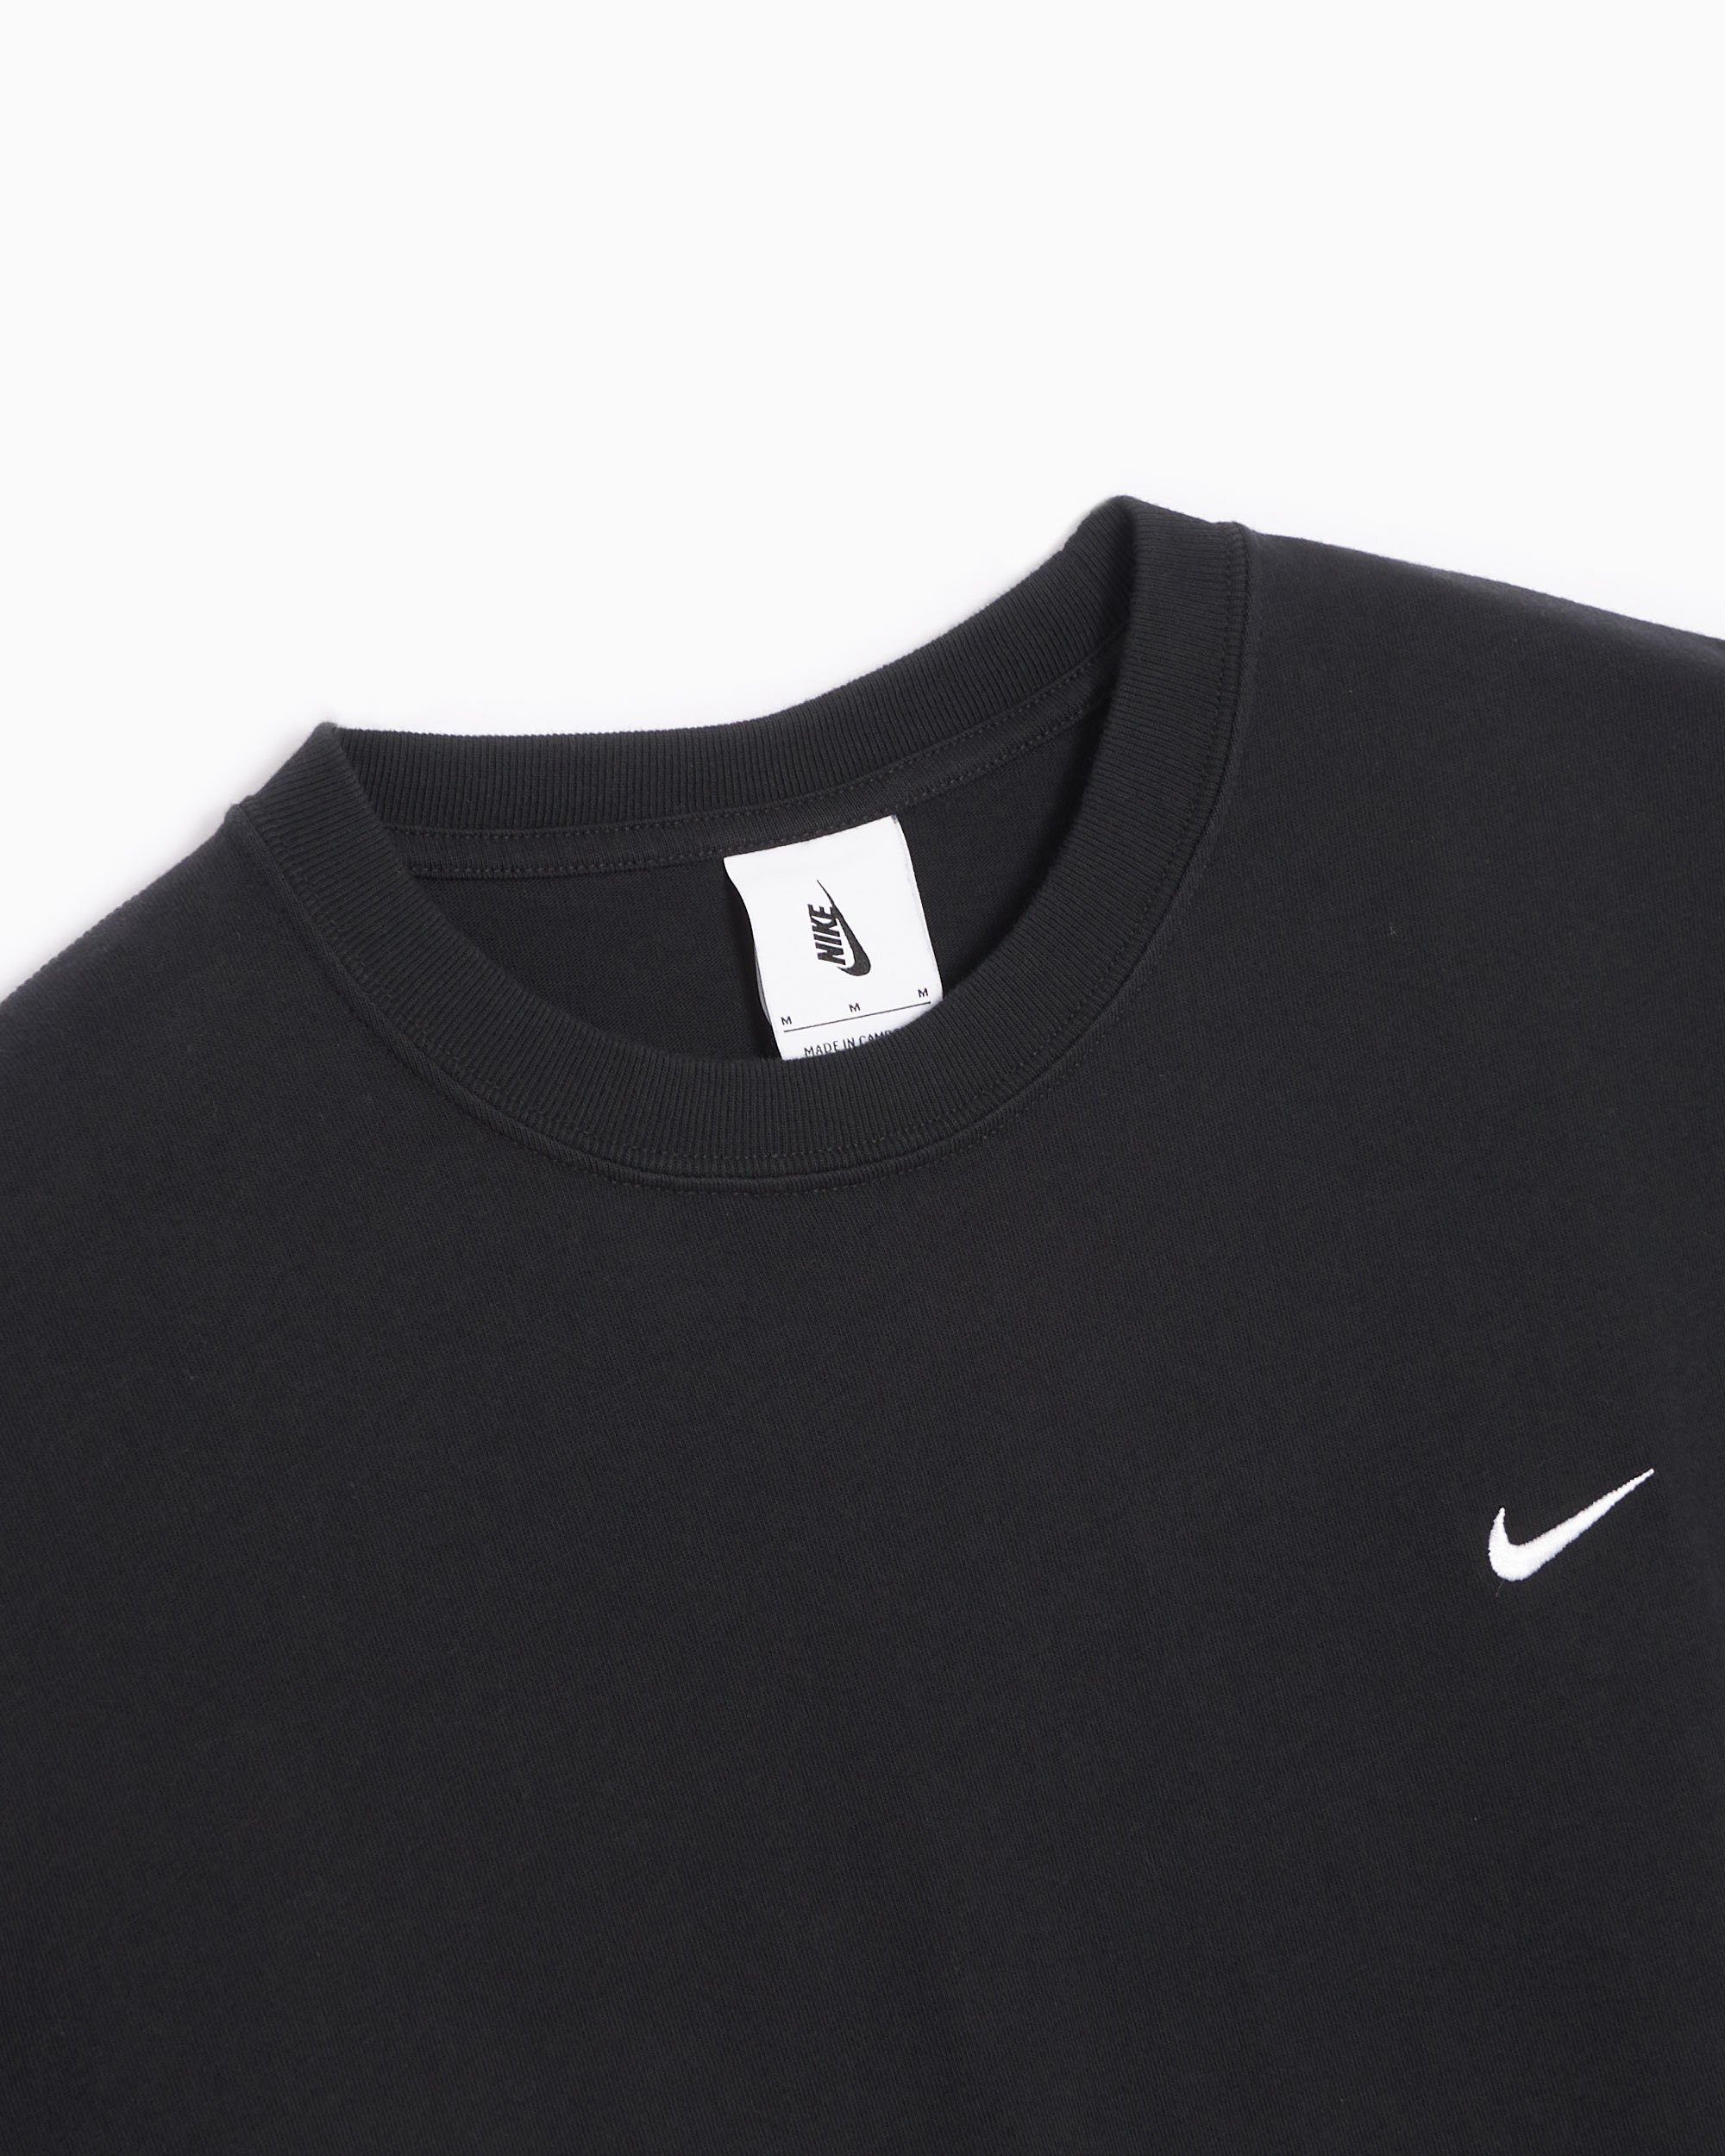 Nike NRG Made in USA T-shirt Black/White Men's - FW21 - US